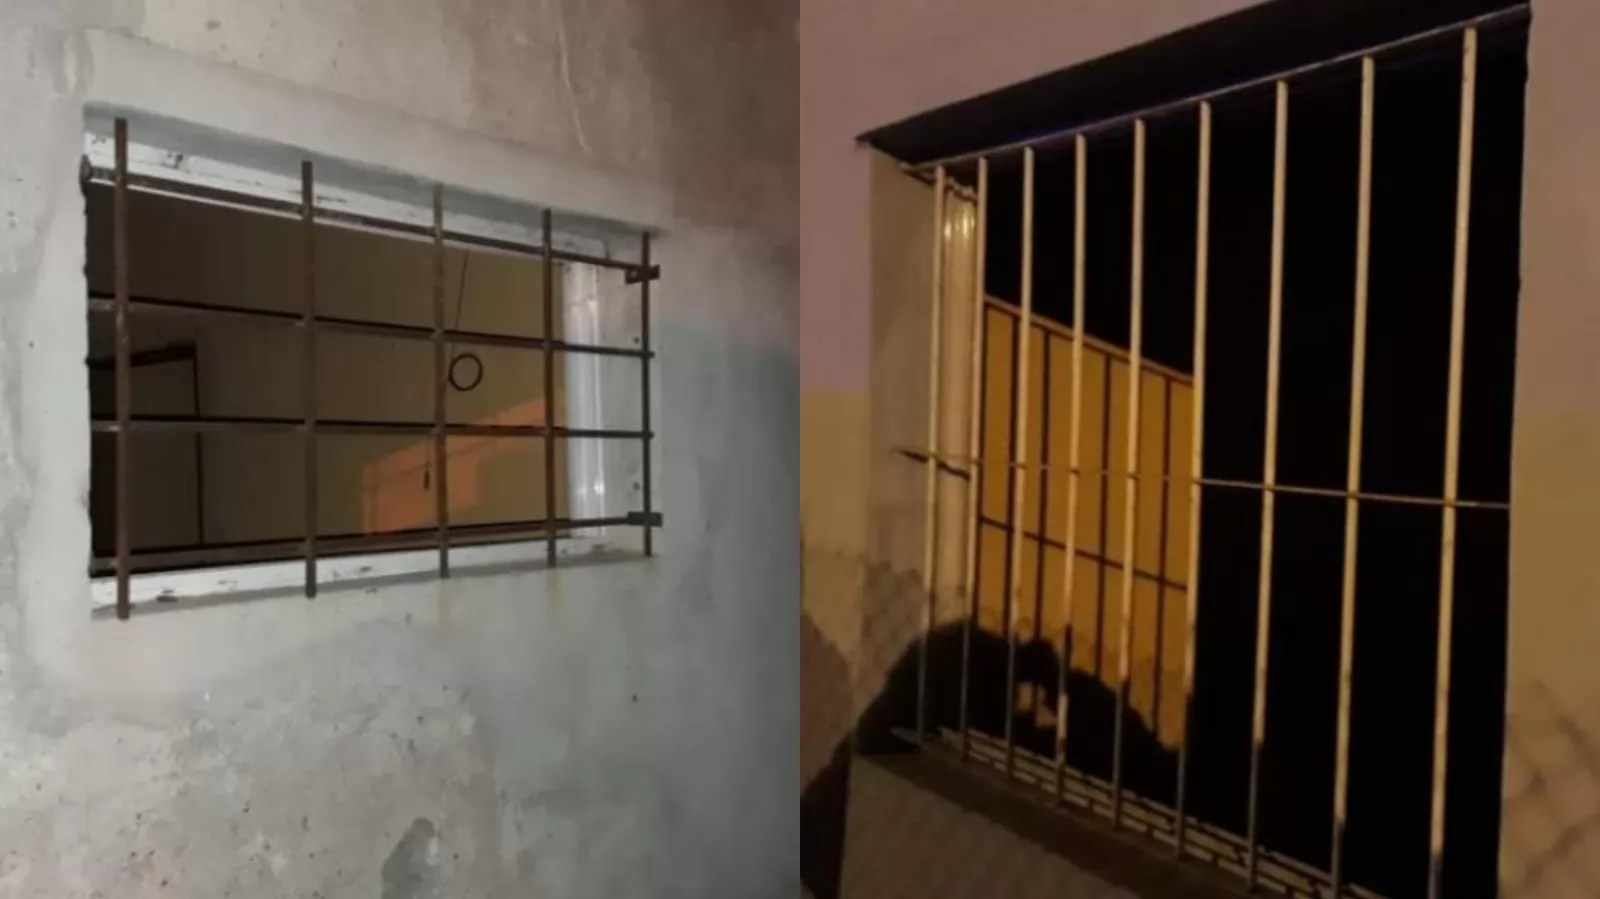 Ingresaron a robar en una vivienda en alquiler en Bermúdez: se llevaron todas las aberturas